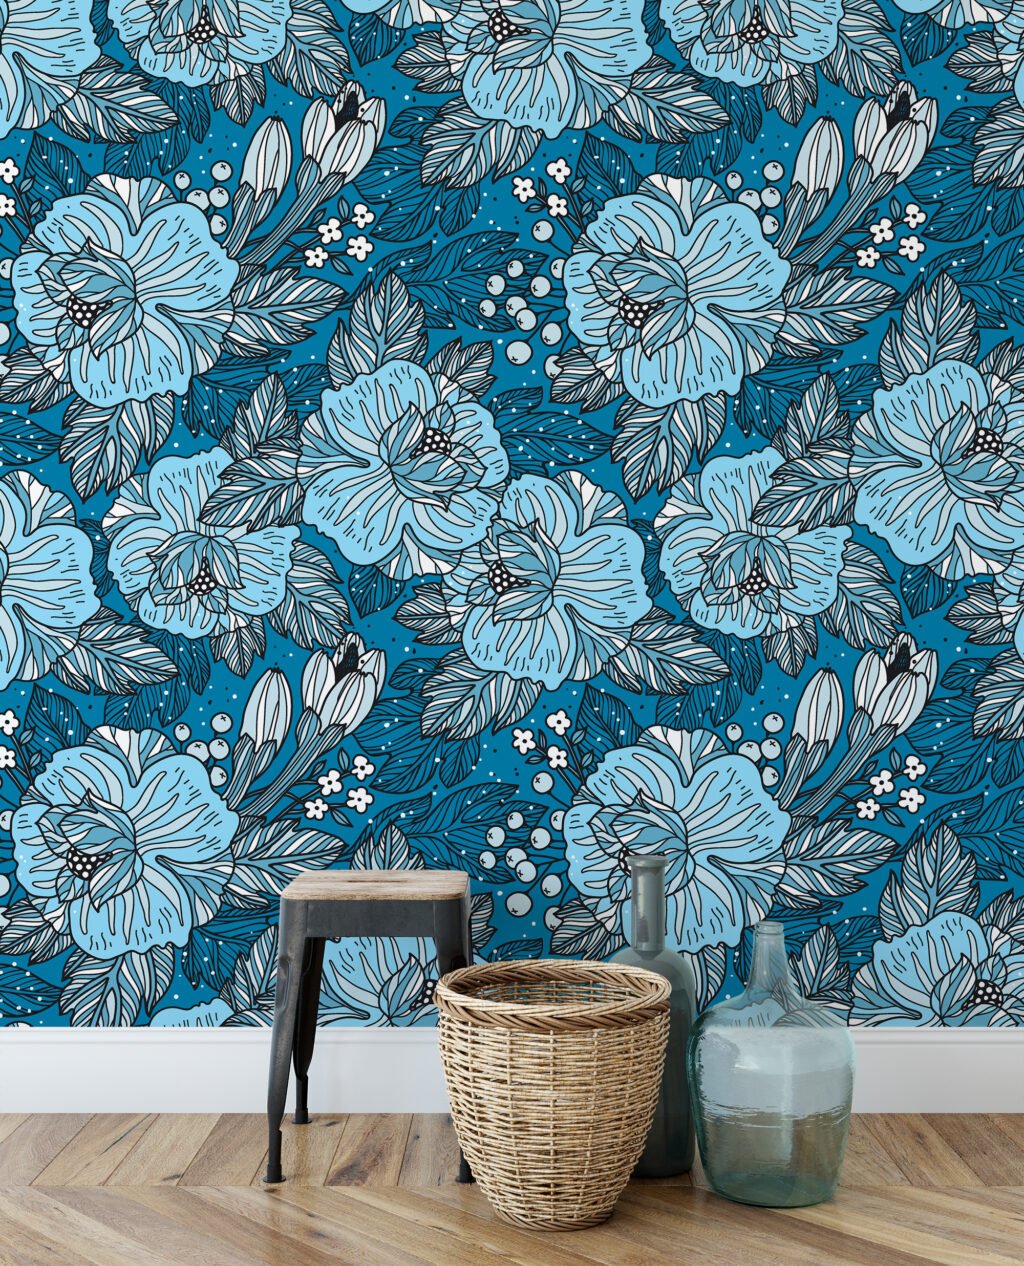 Mavi Renkli Çerçeveli Çiçek Desenli Duvar Kağıdı, Mavi Çiçek Tasarımı 3D Duvar Posteri Çiçekli Duvar Kağıtları 5